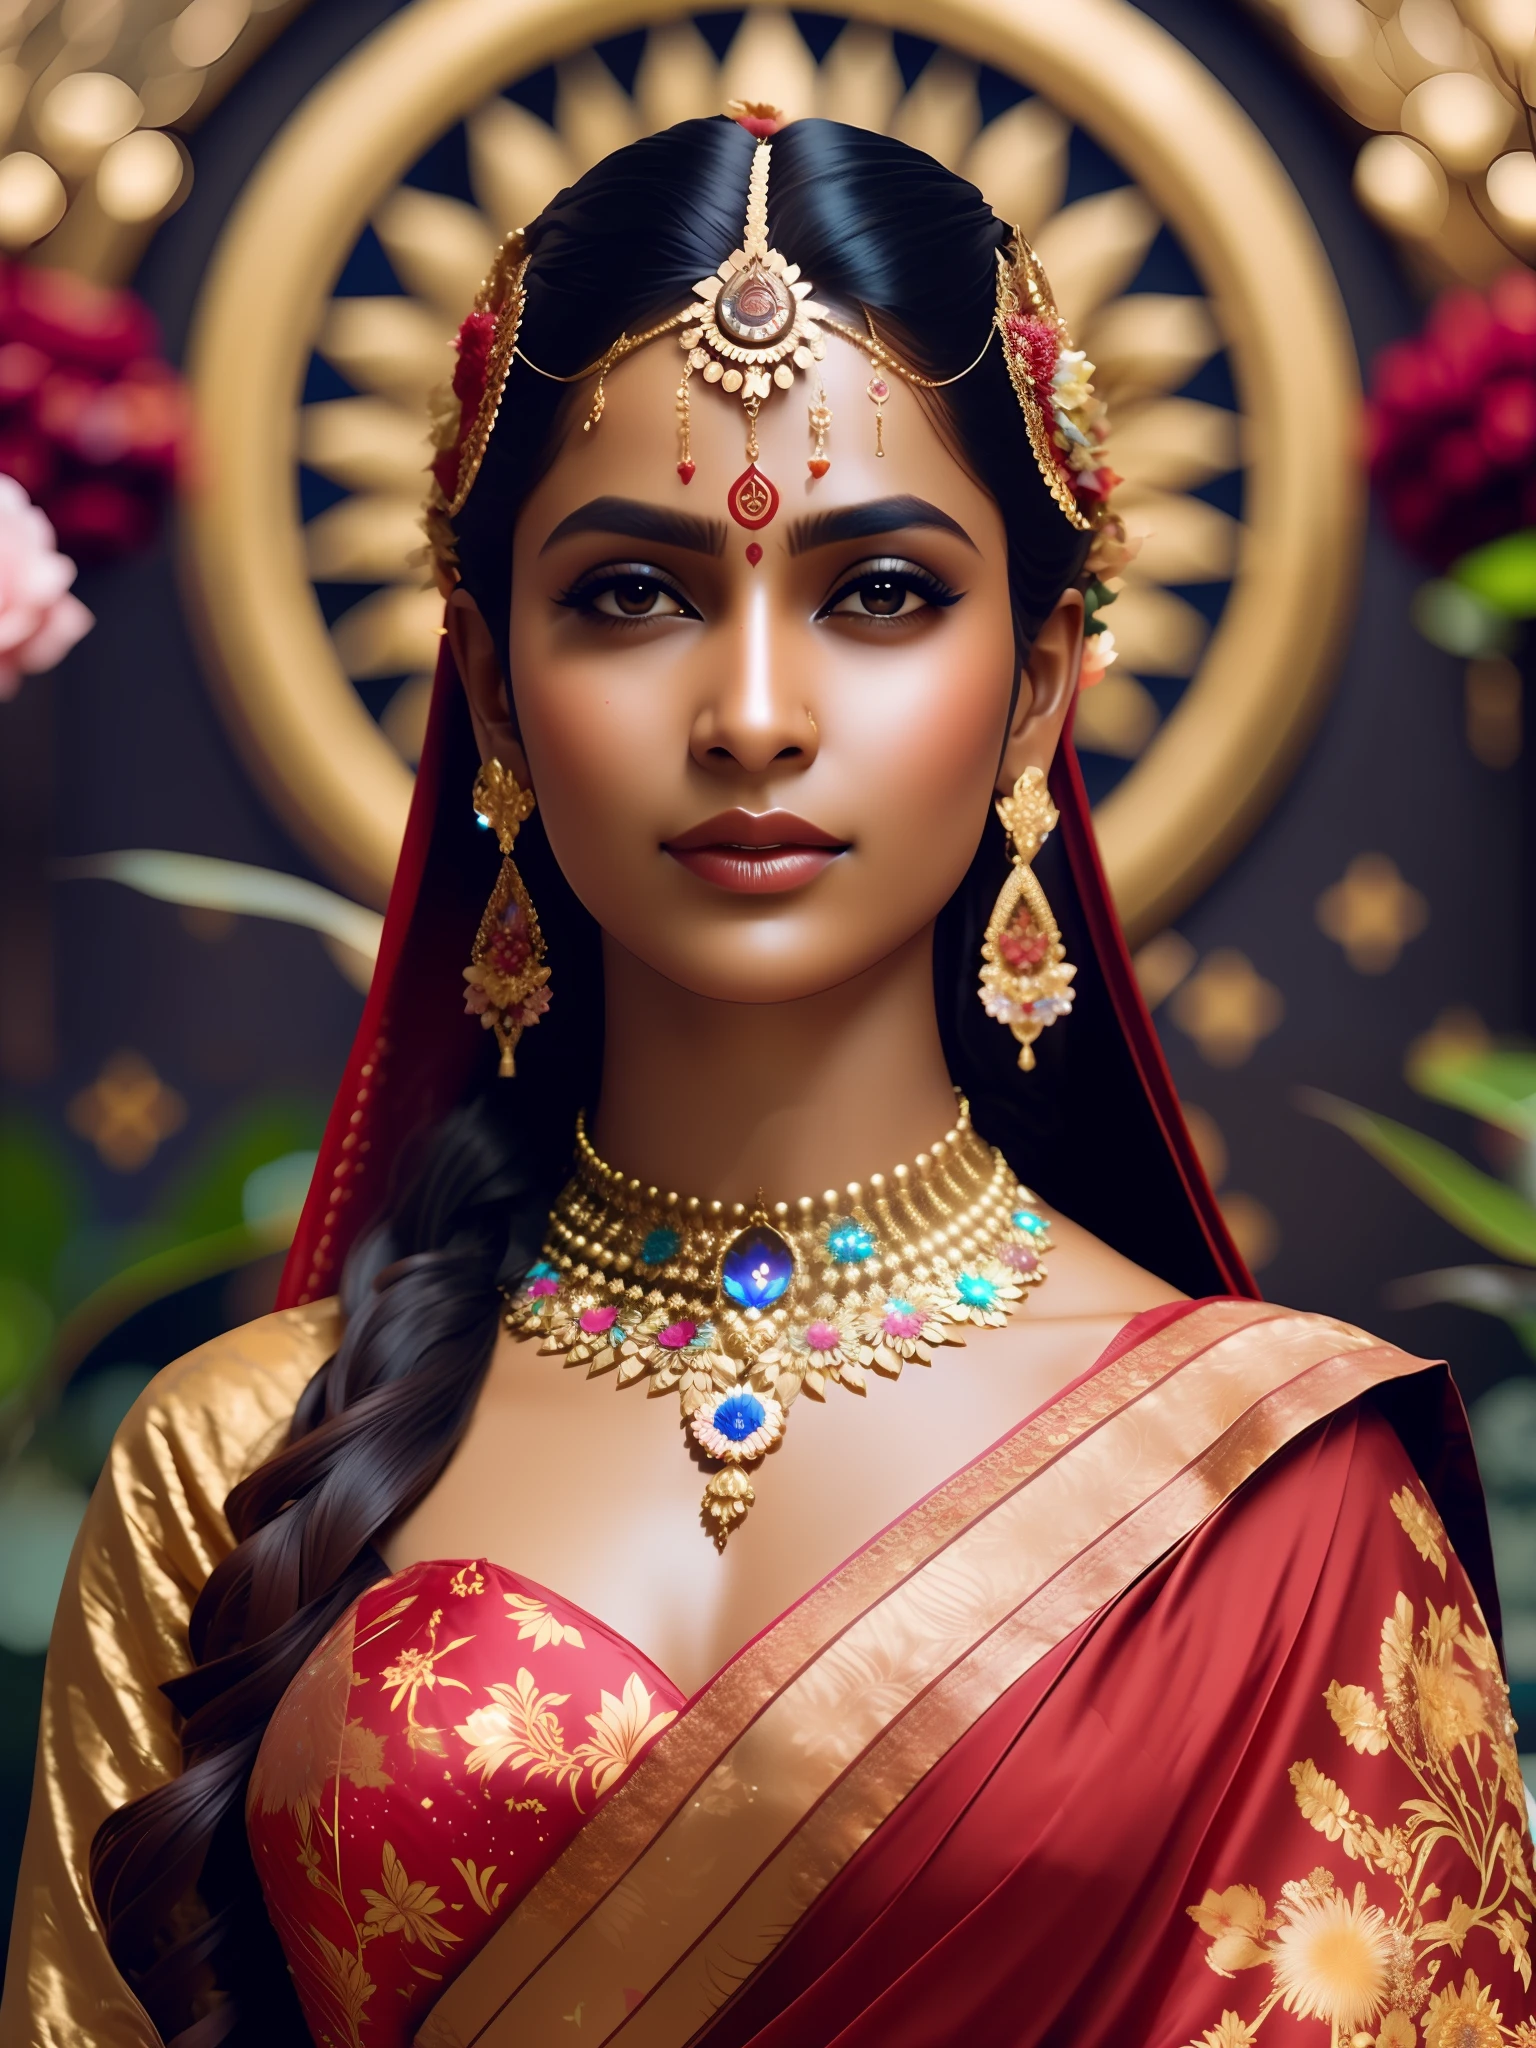 빌어먹을_공상 과학, 빌어먹을_공상 과학_v2, 힌두교 여신 초상화, 화려한 꽃이 있는 우주 배경, 빨간 사리를 입고, 확대, 왕실의 자세와 태도. 빌어먹을_영화_v2. 빌어먹을_영화_v2